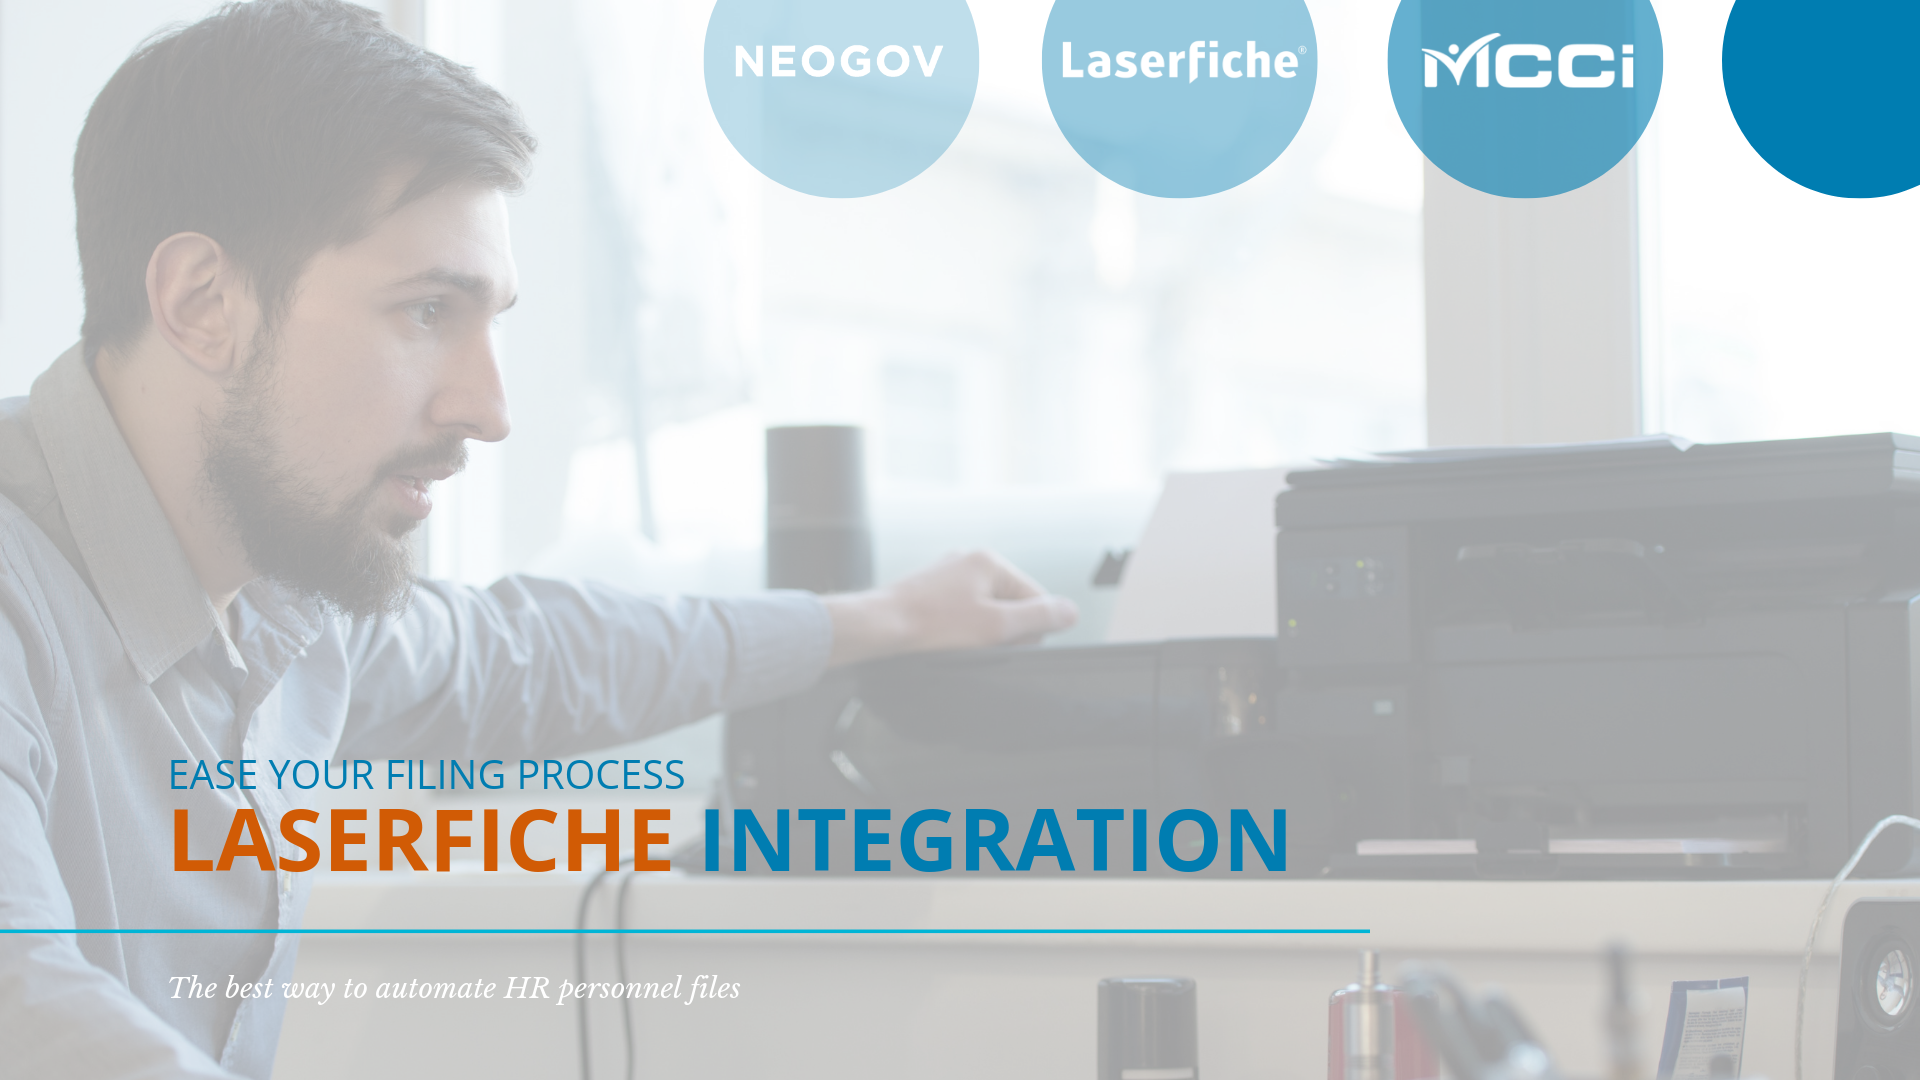 NEOGOV LF Integration Video Slide - Printing & Scanning